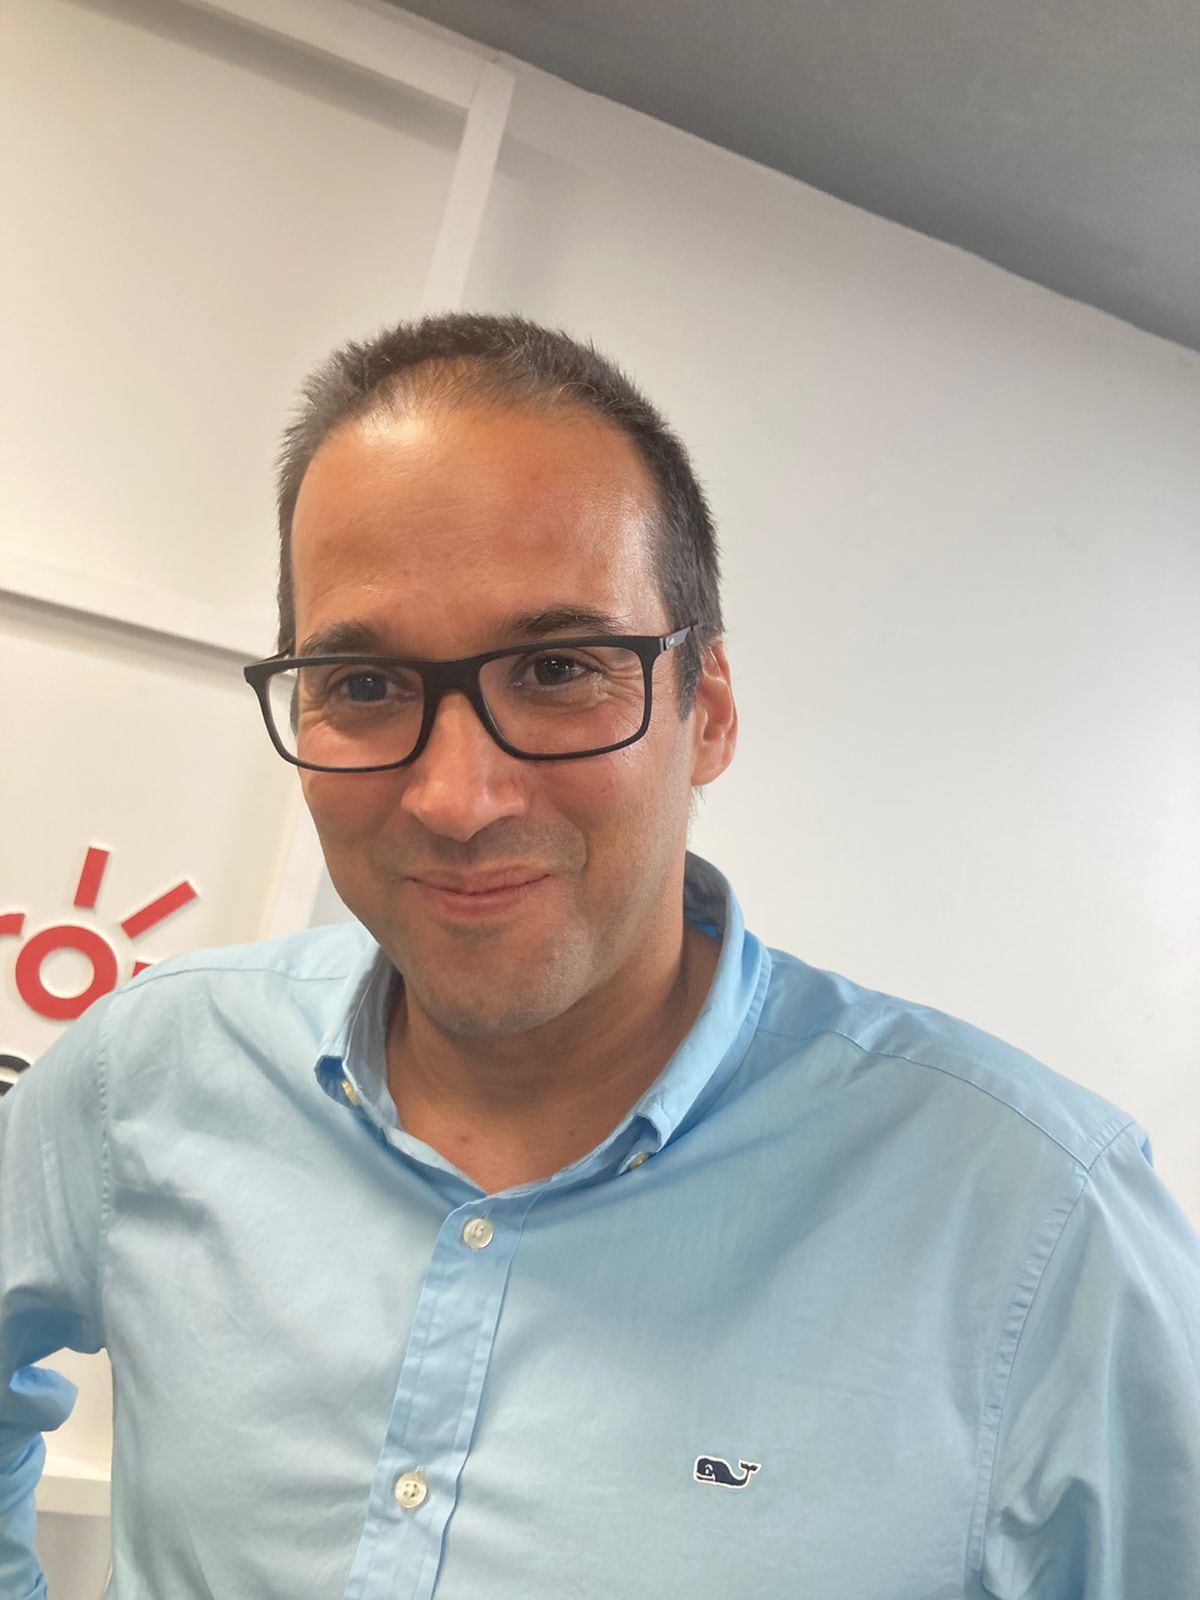 Andrés Vásquez, CEO de Nequi